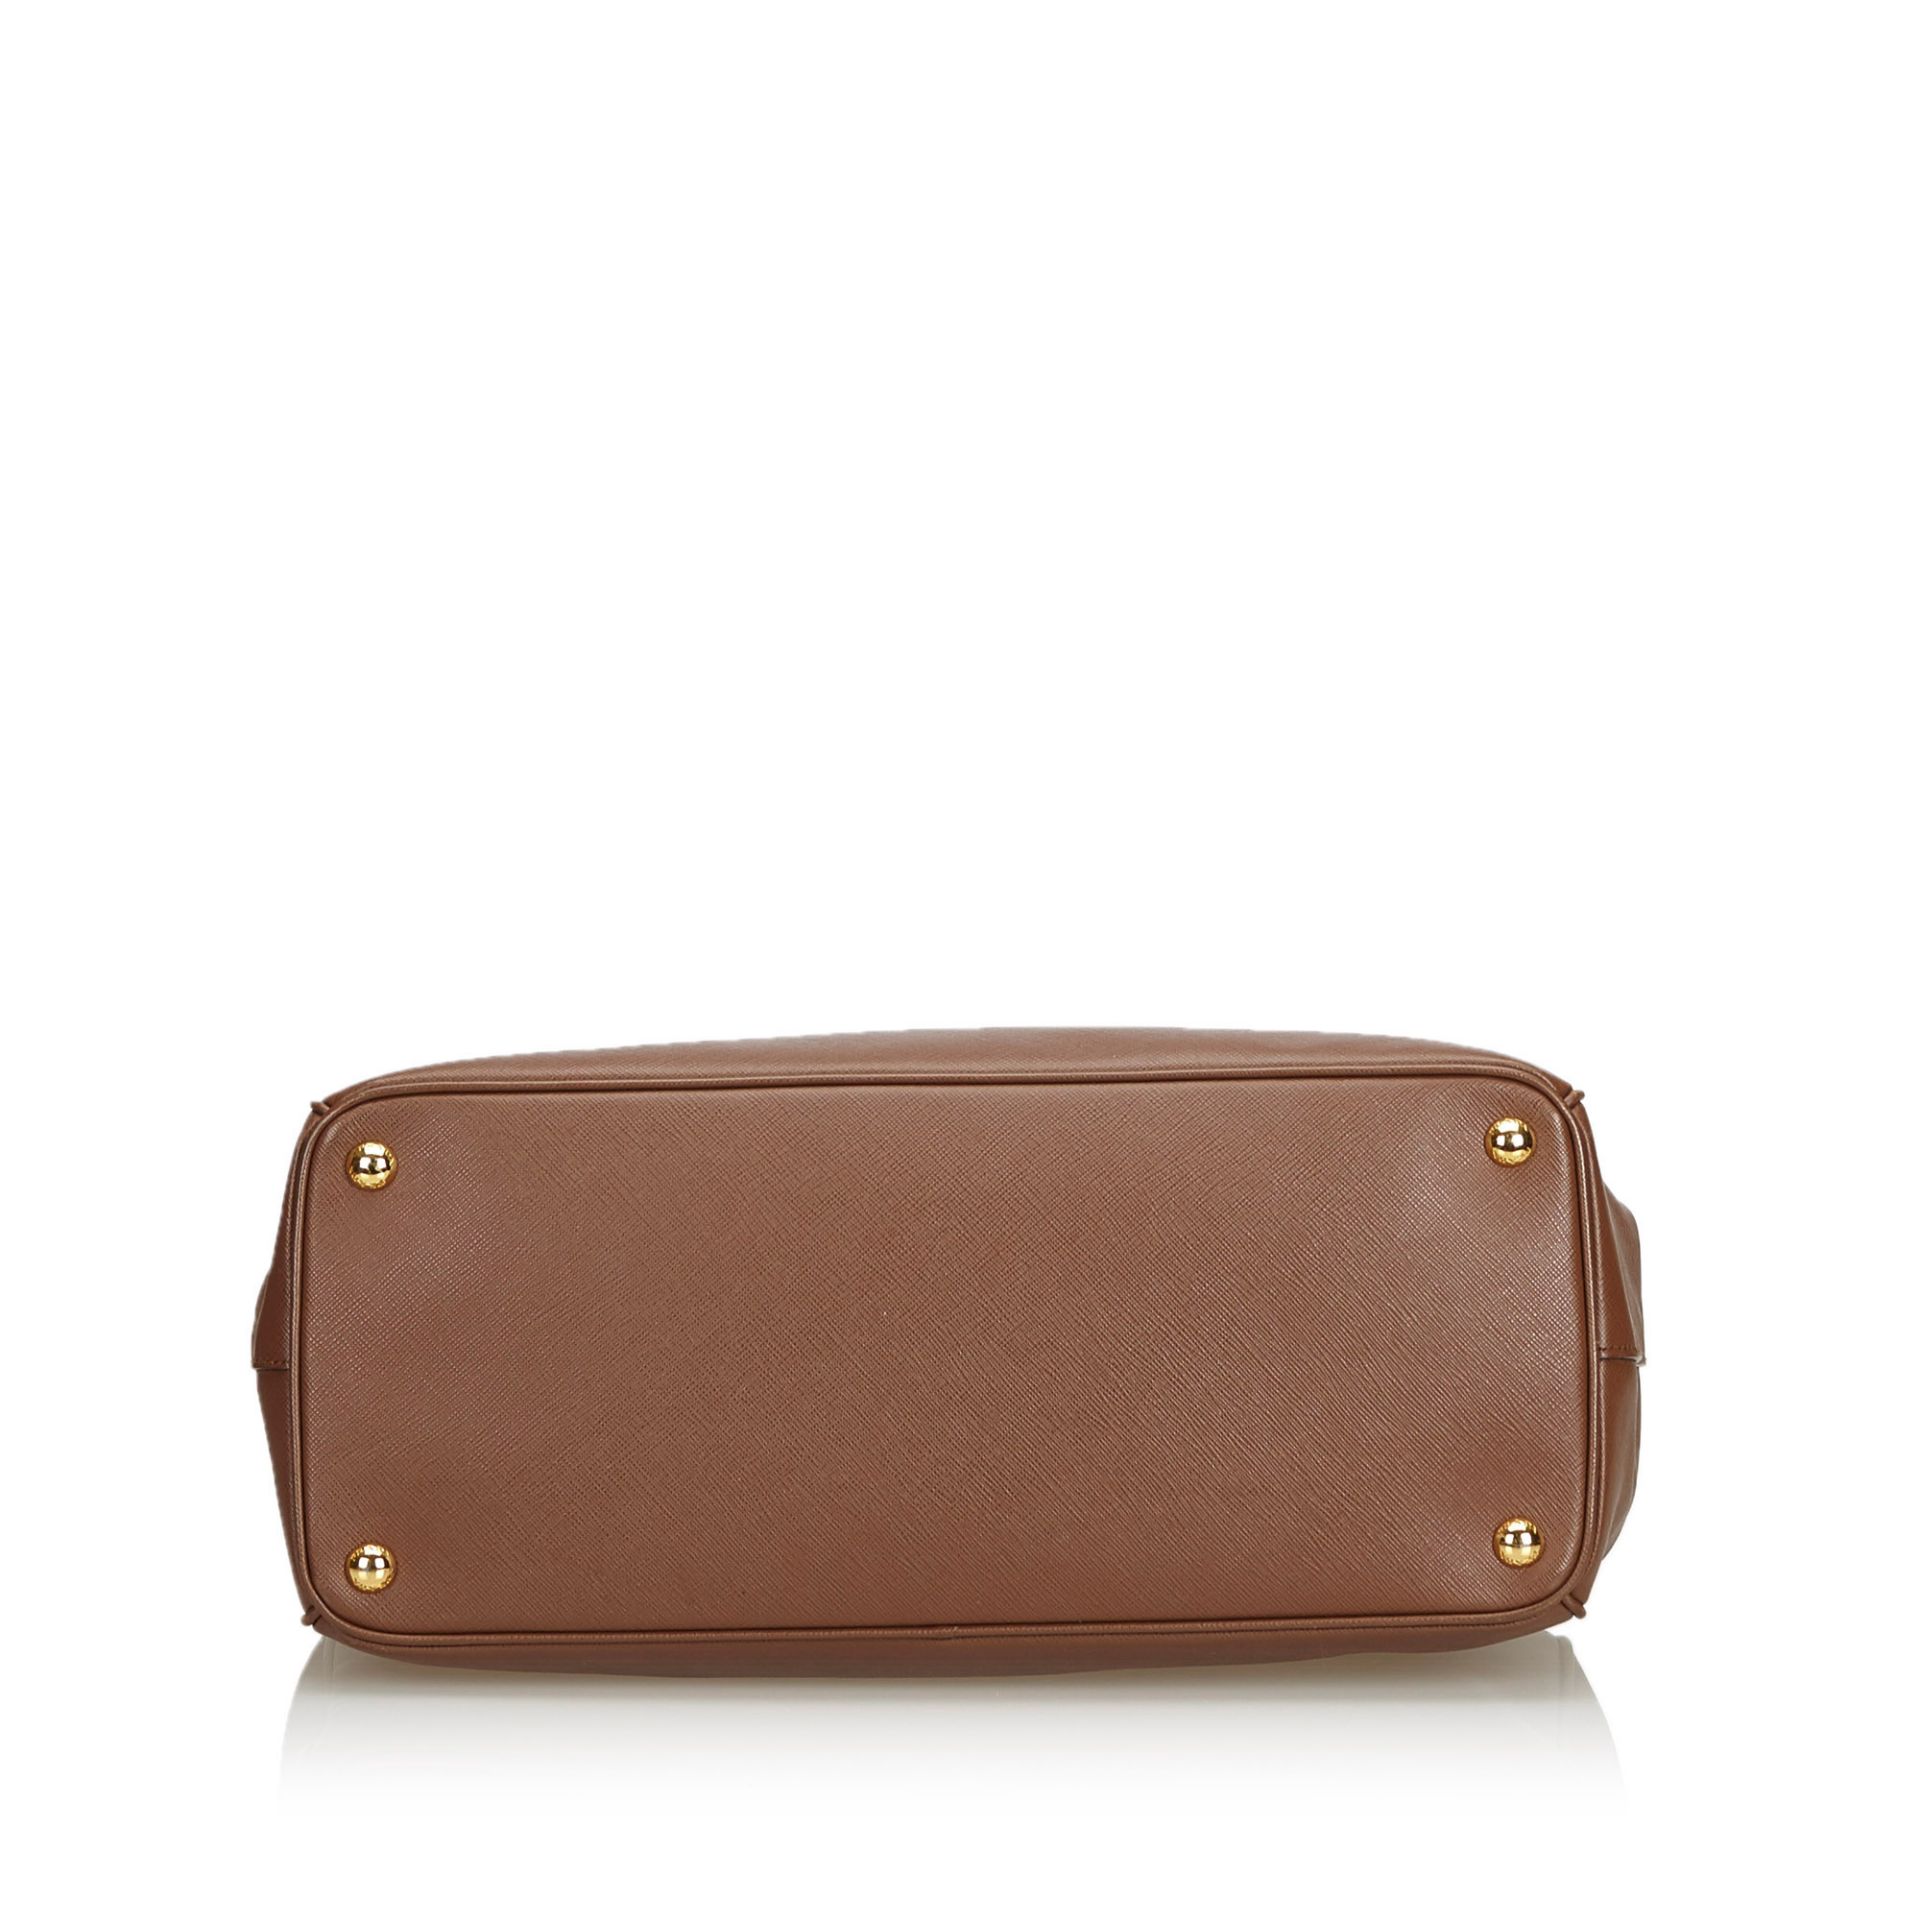 Prada Saffiano Leather Galleria Handbag - Image 8 of 10